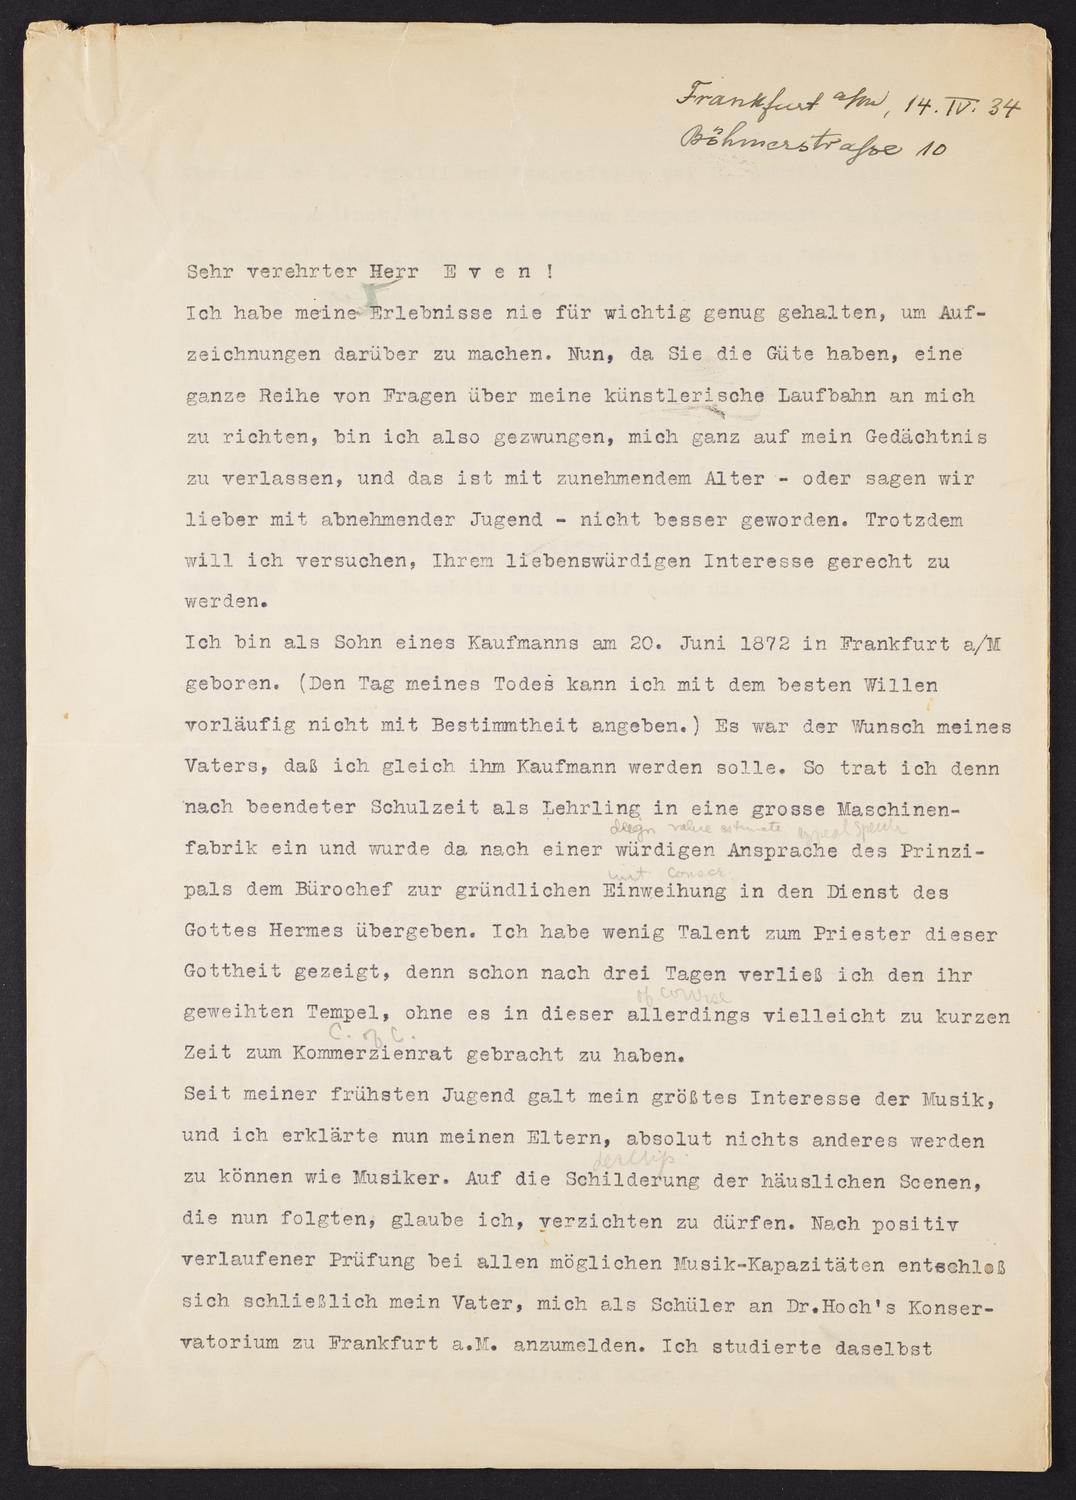 Correspondence from Bernhard Sekles to David Ewen, page 1 of 4